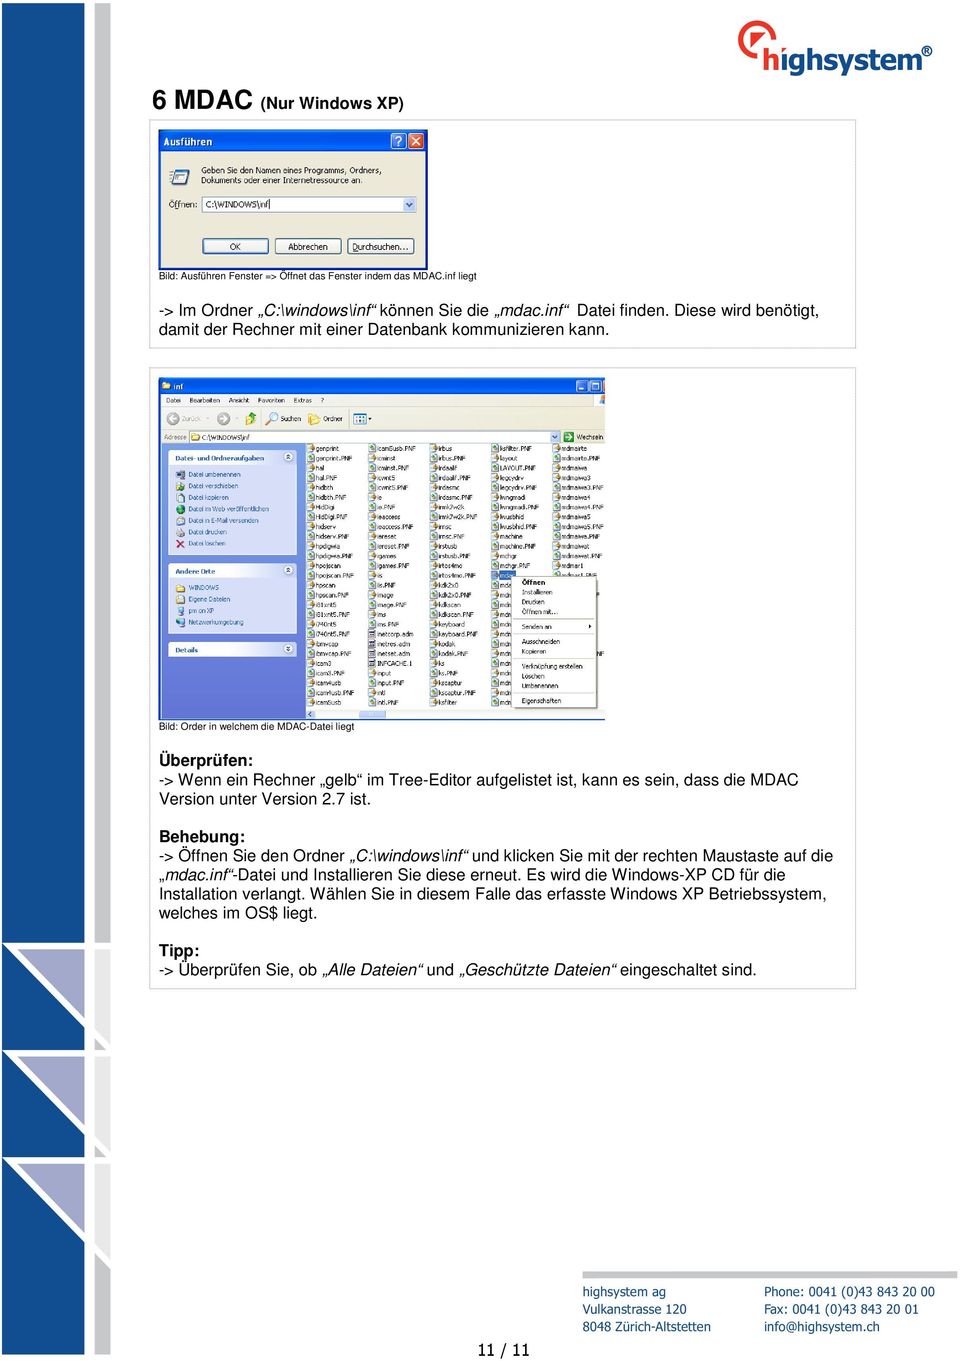 Bild: Order in welchem die MDAC-Datei liegt -> Wenn ein Rechner gelb im Tree-Editor aufgelistet ist, kann es sein, dass die MDAC Version unter Version 2.7 ist.